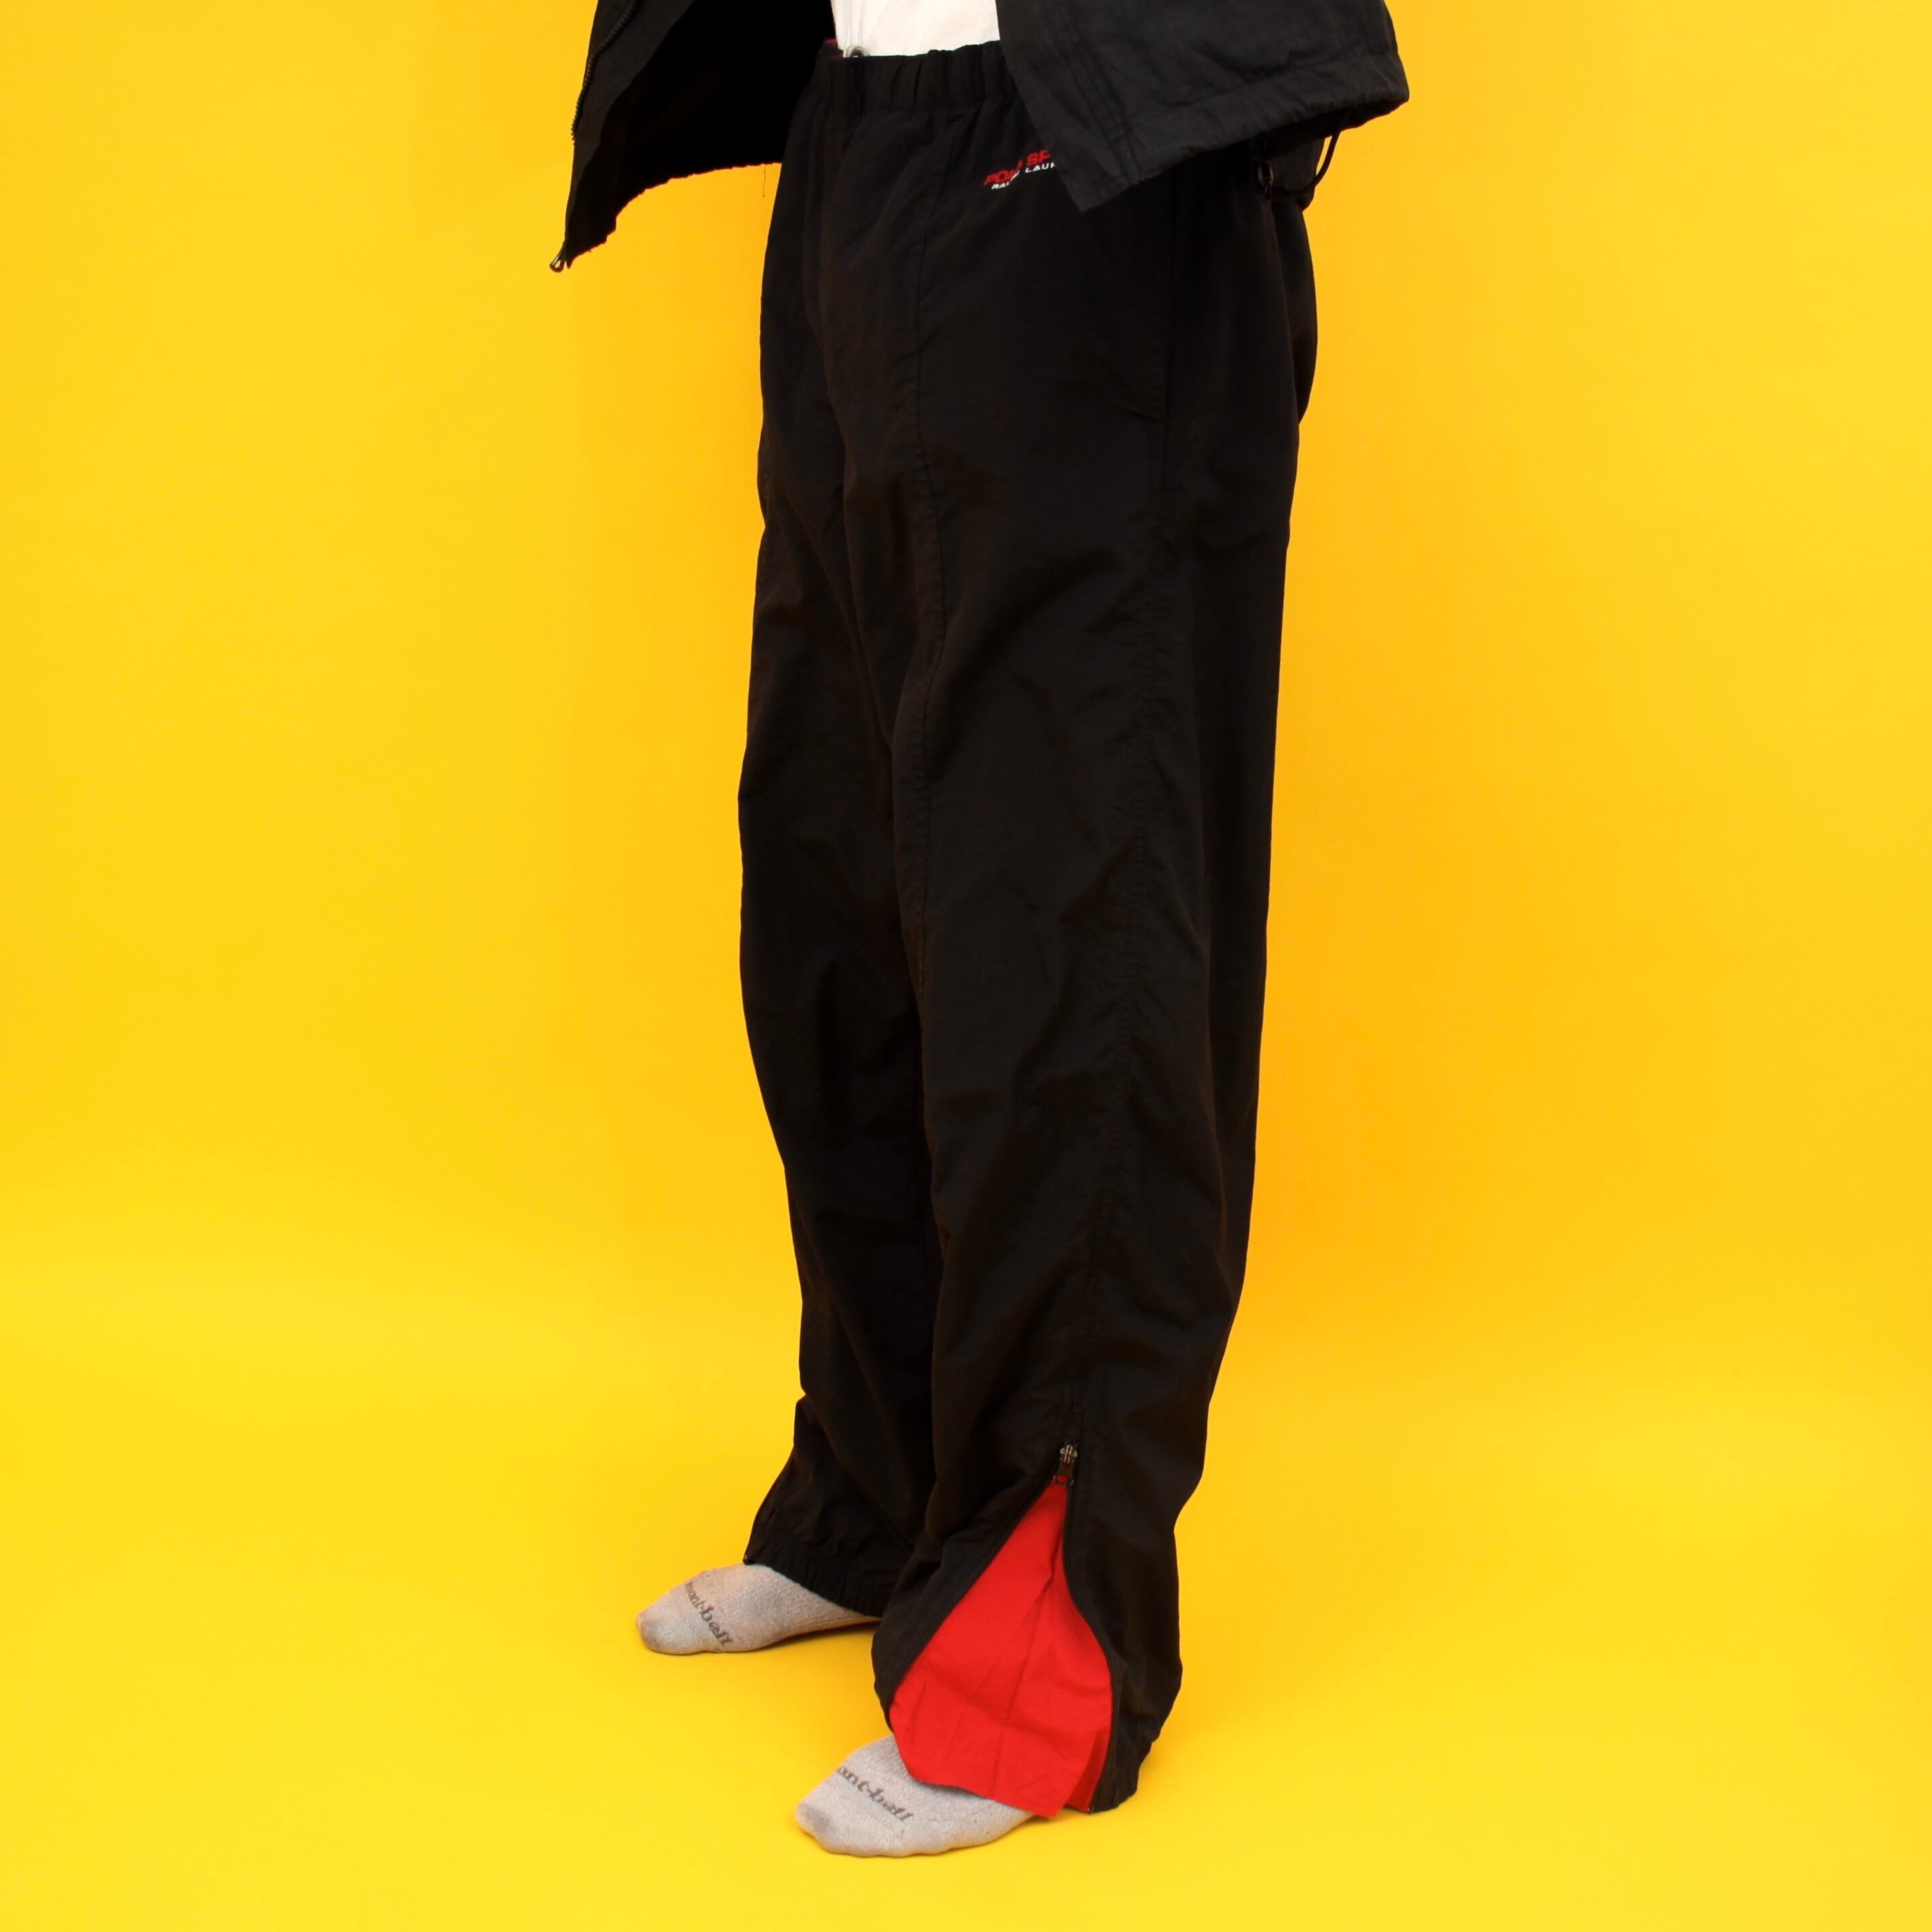 0339. 1990's polo sport nylon pants ブラック×レッド ナイロンパンツ イージーパンツ ジムパンツ ポロスポーツ  ラルフローレン 90s 90年代 vintage Ralph Lauren IPFU 古着